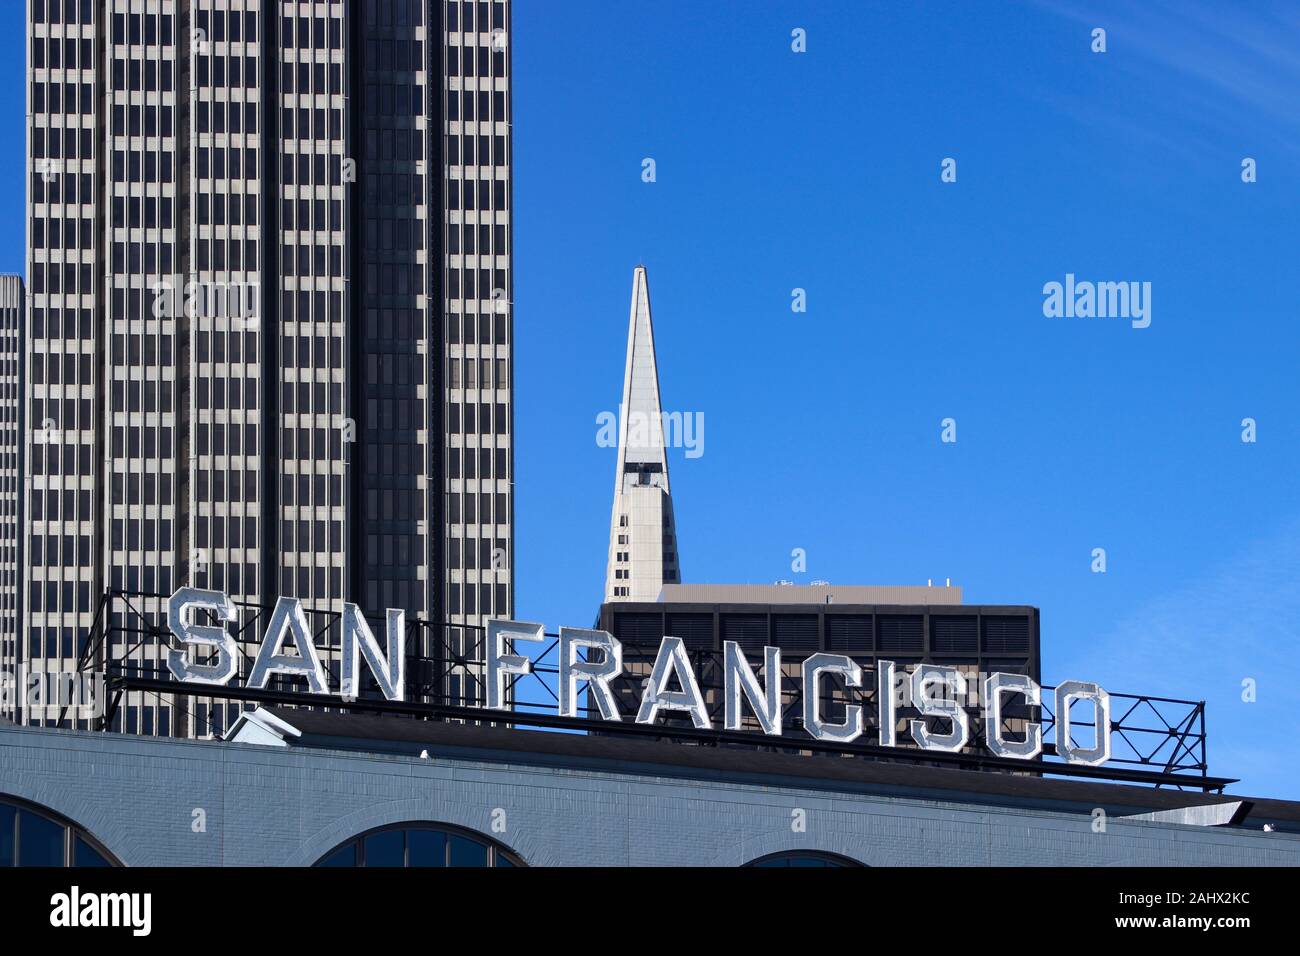 San Francisco des lettres de néon au-dessus de Ferry Building. Embarcadero Center et l'extrémité de la Transamerica Pyramid en arrière-plan. Californie, USA. Banque D'Images